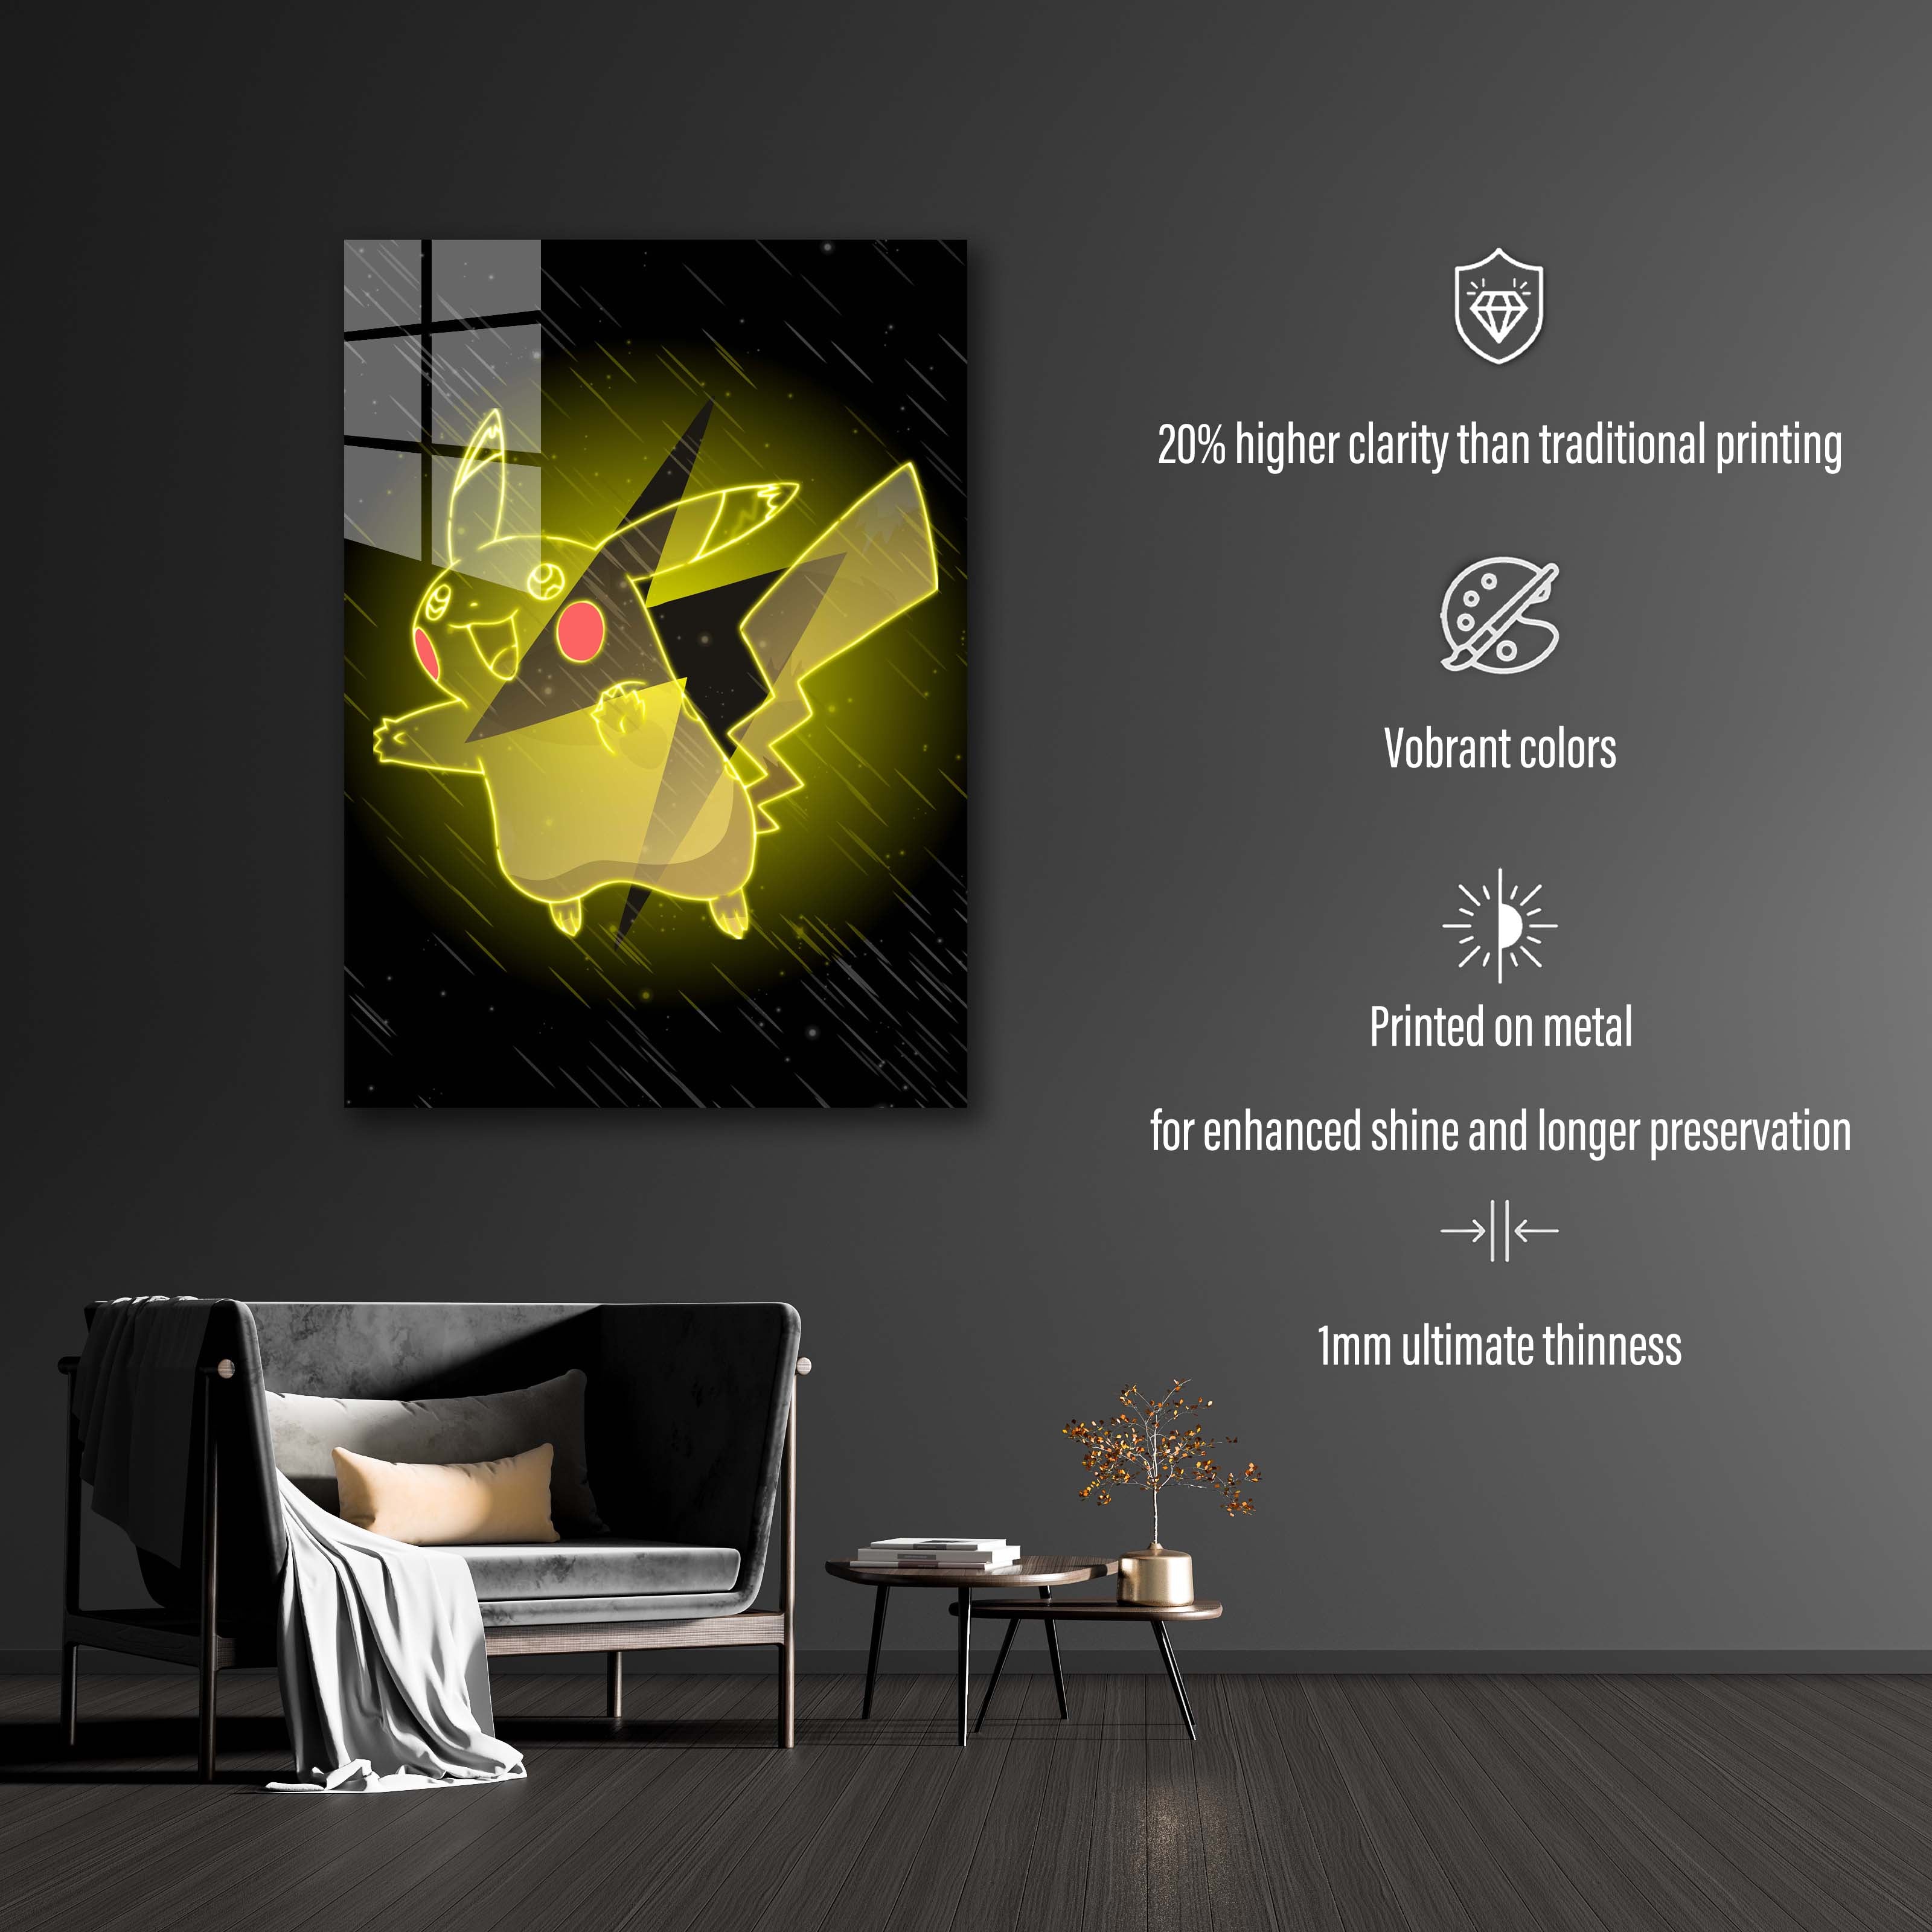 Partner Pikachu-designed by @UDWorks